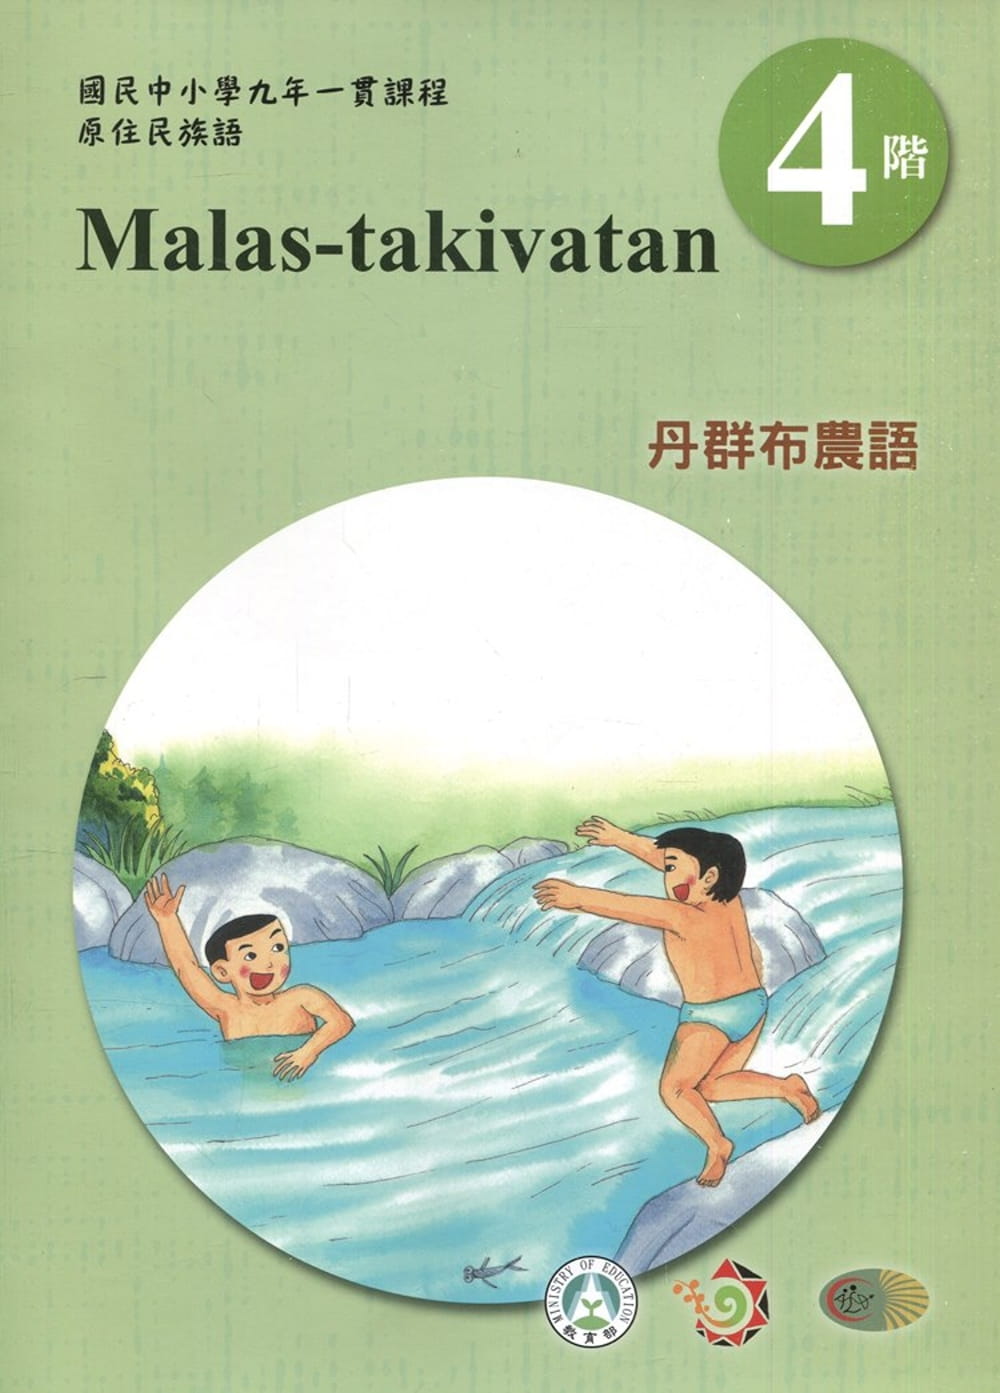 丹群布農語學習手冊第4階(附光碟)3版2刷